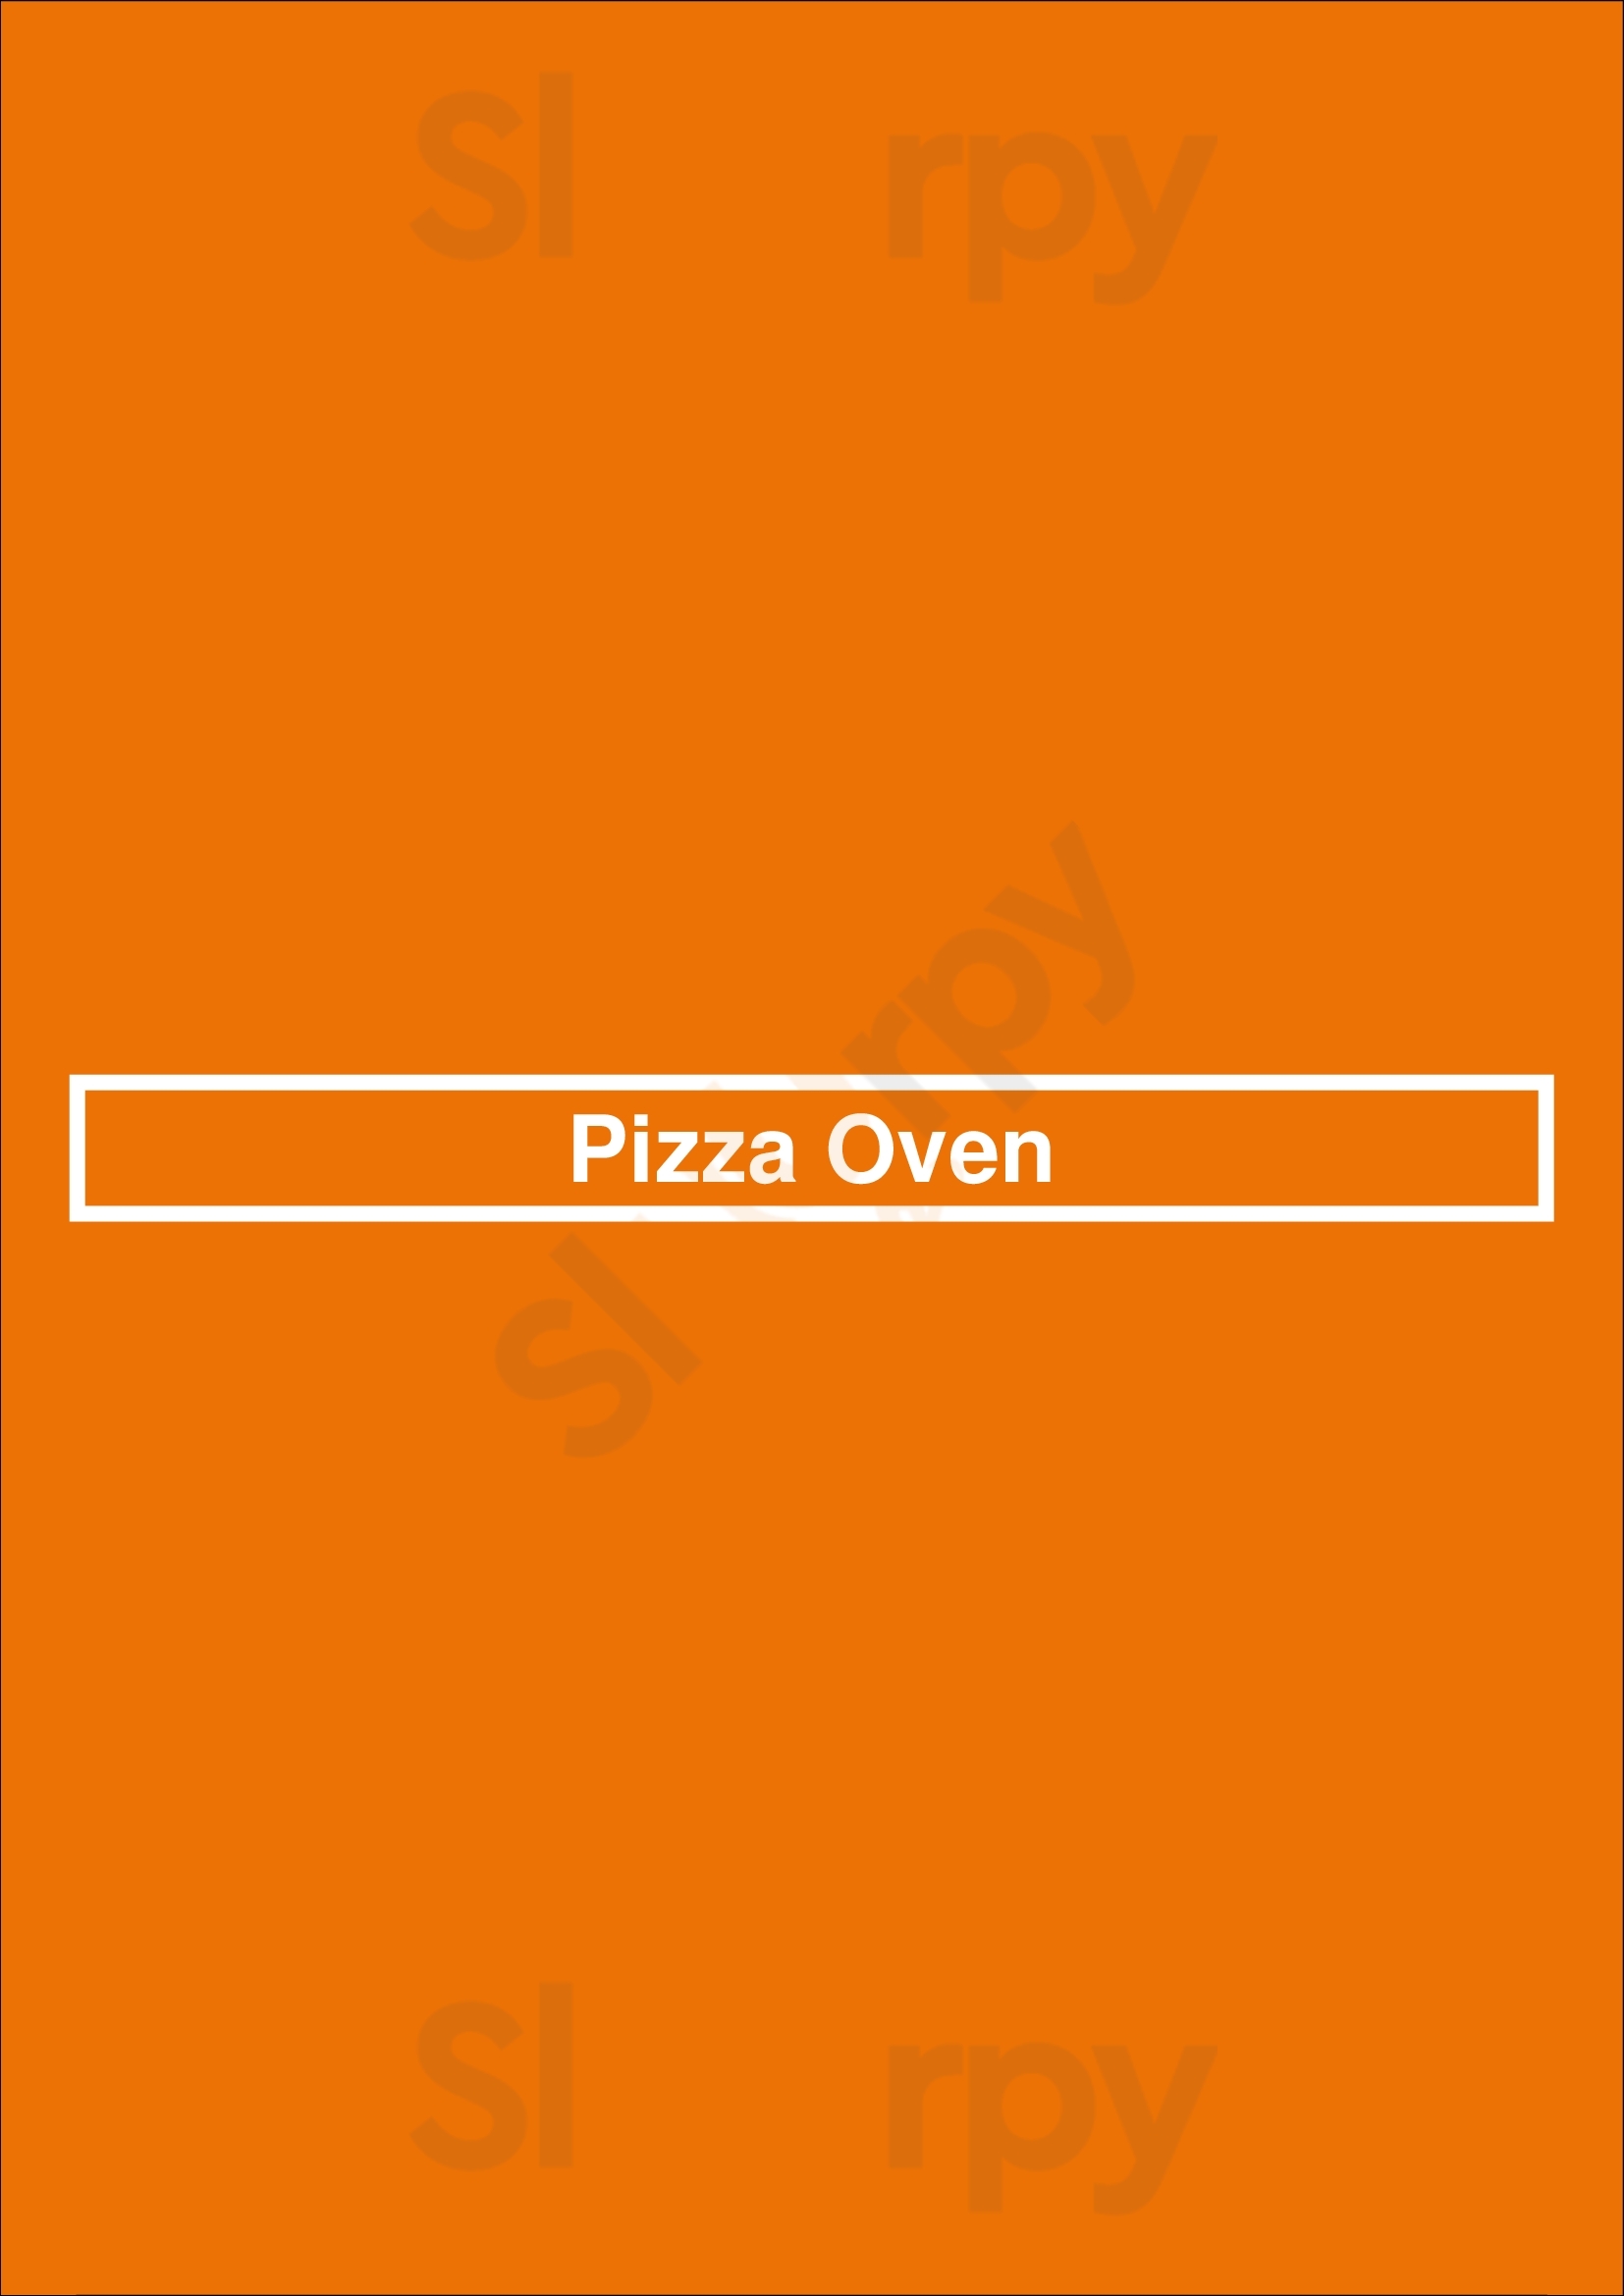 Pizza Oven Canton Menu - 1